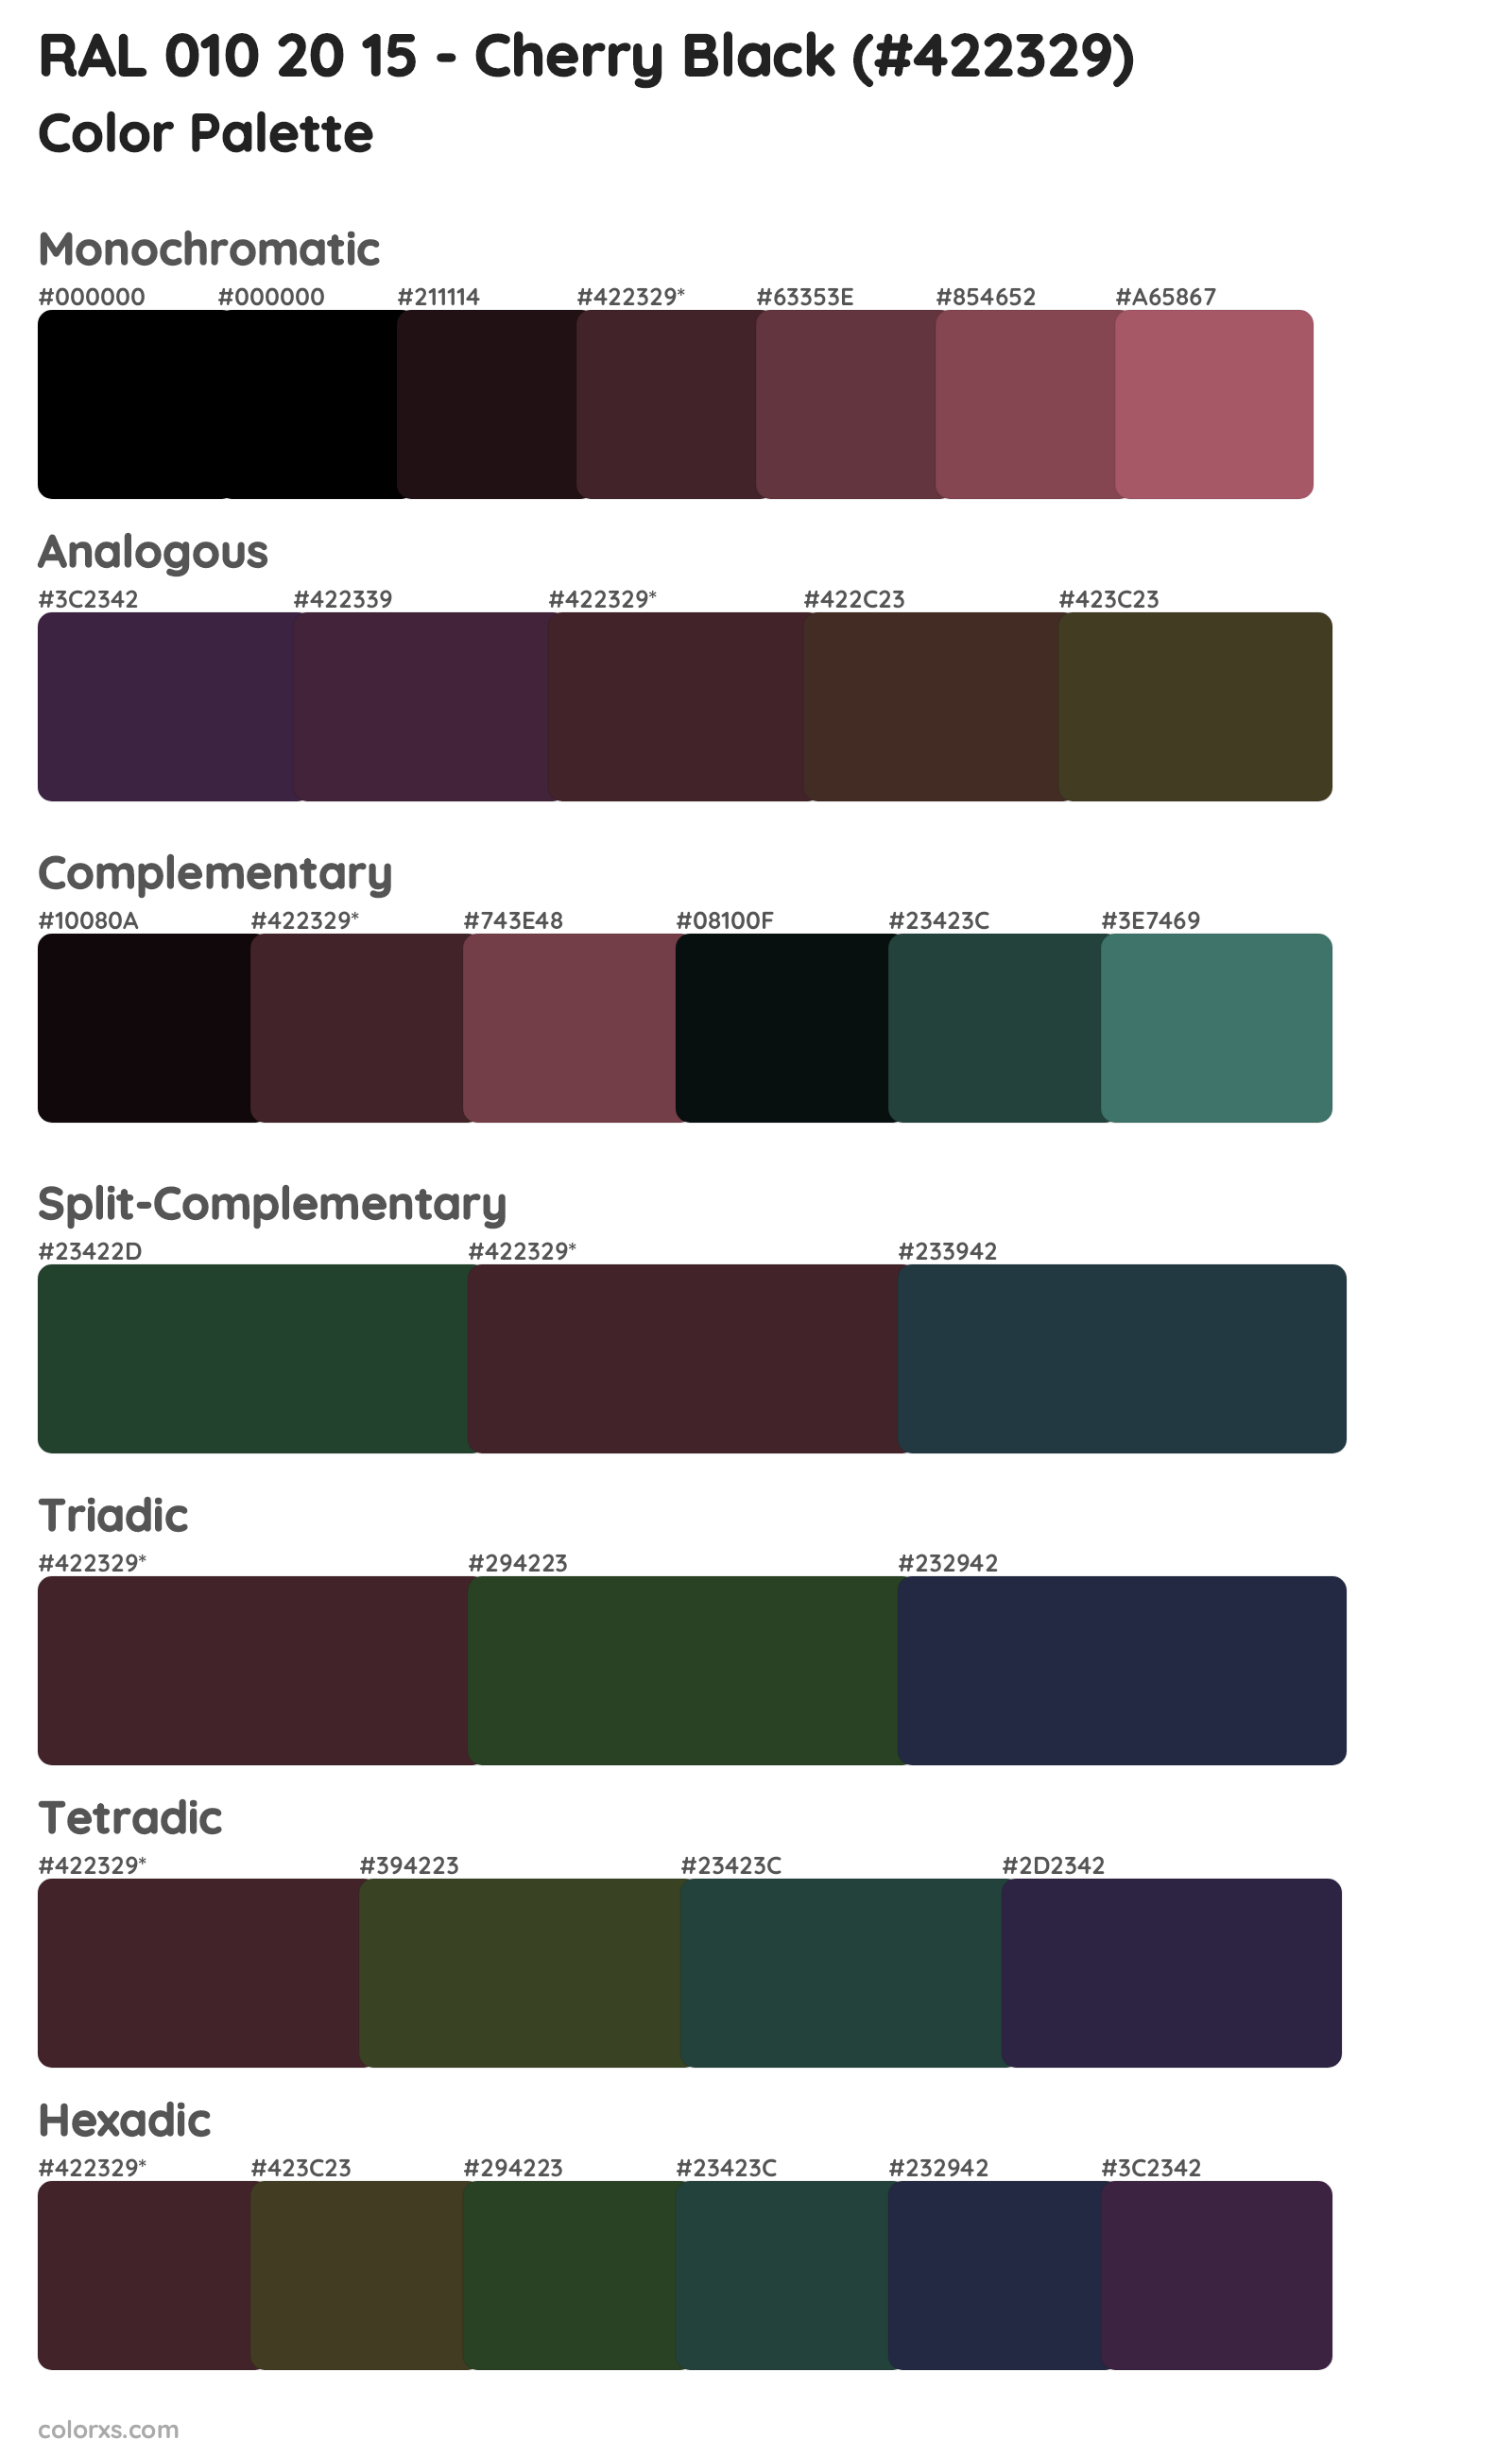 RAL 010 20 15 - Cherry Black Color Scheme Palettes